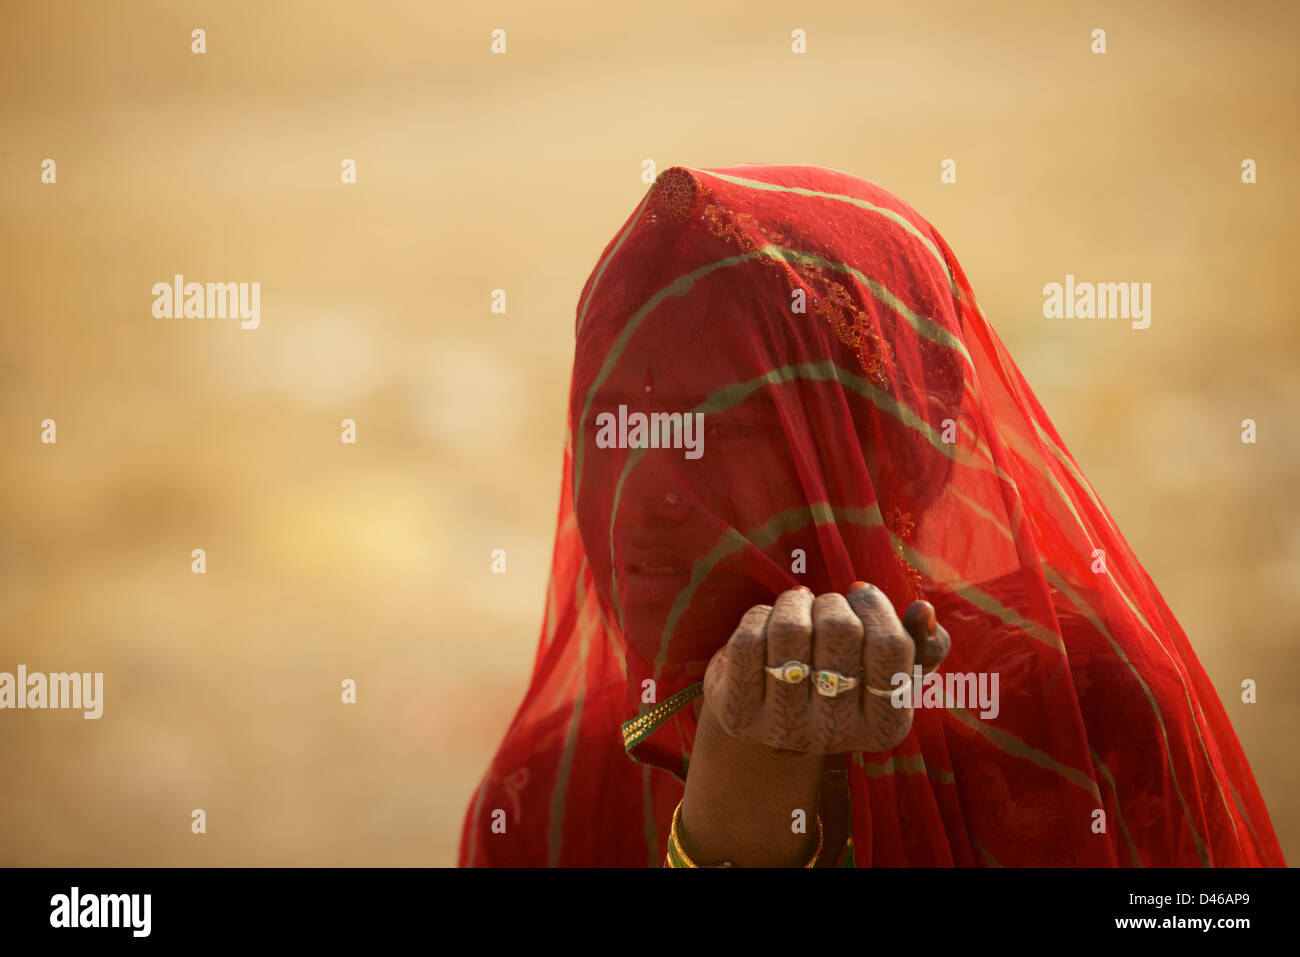 Une jeune femme indienne à la périphérie de Bikaner Rajasthan en Inde du nord. shields son visage du vent du désert et le soleil chaud Banque D'Images